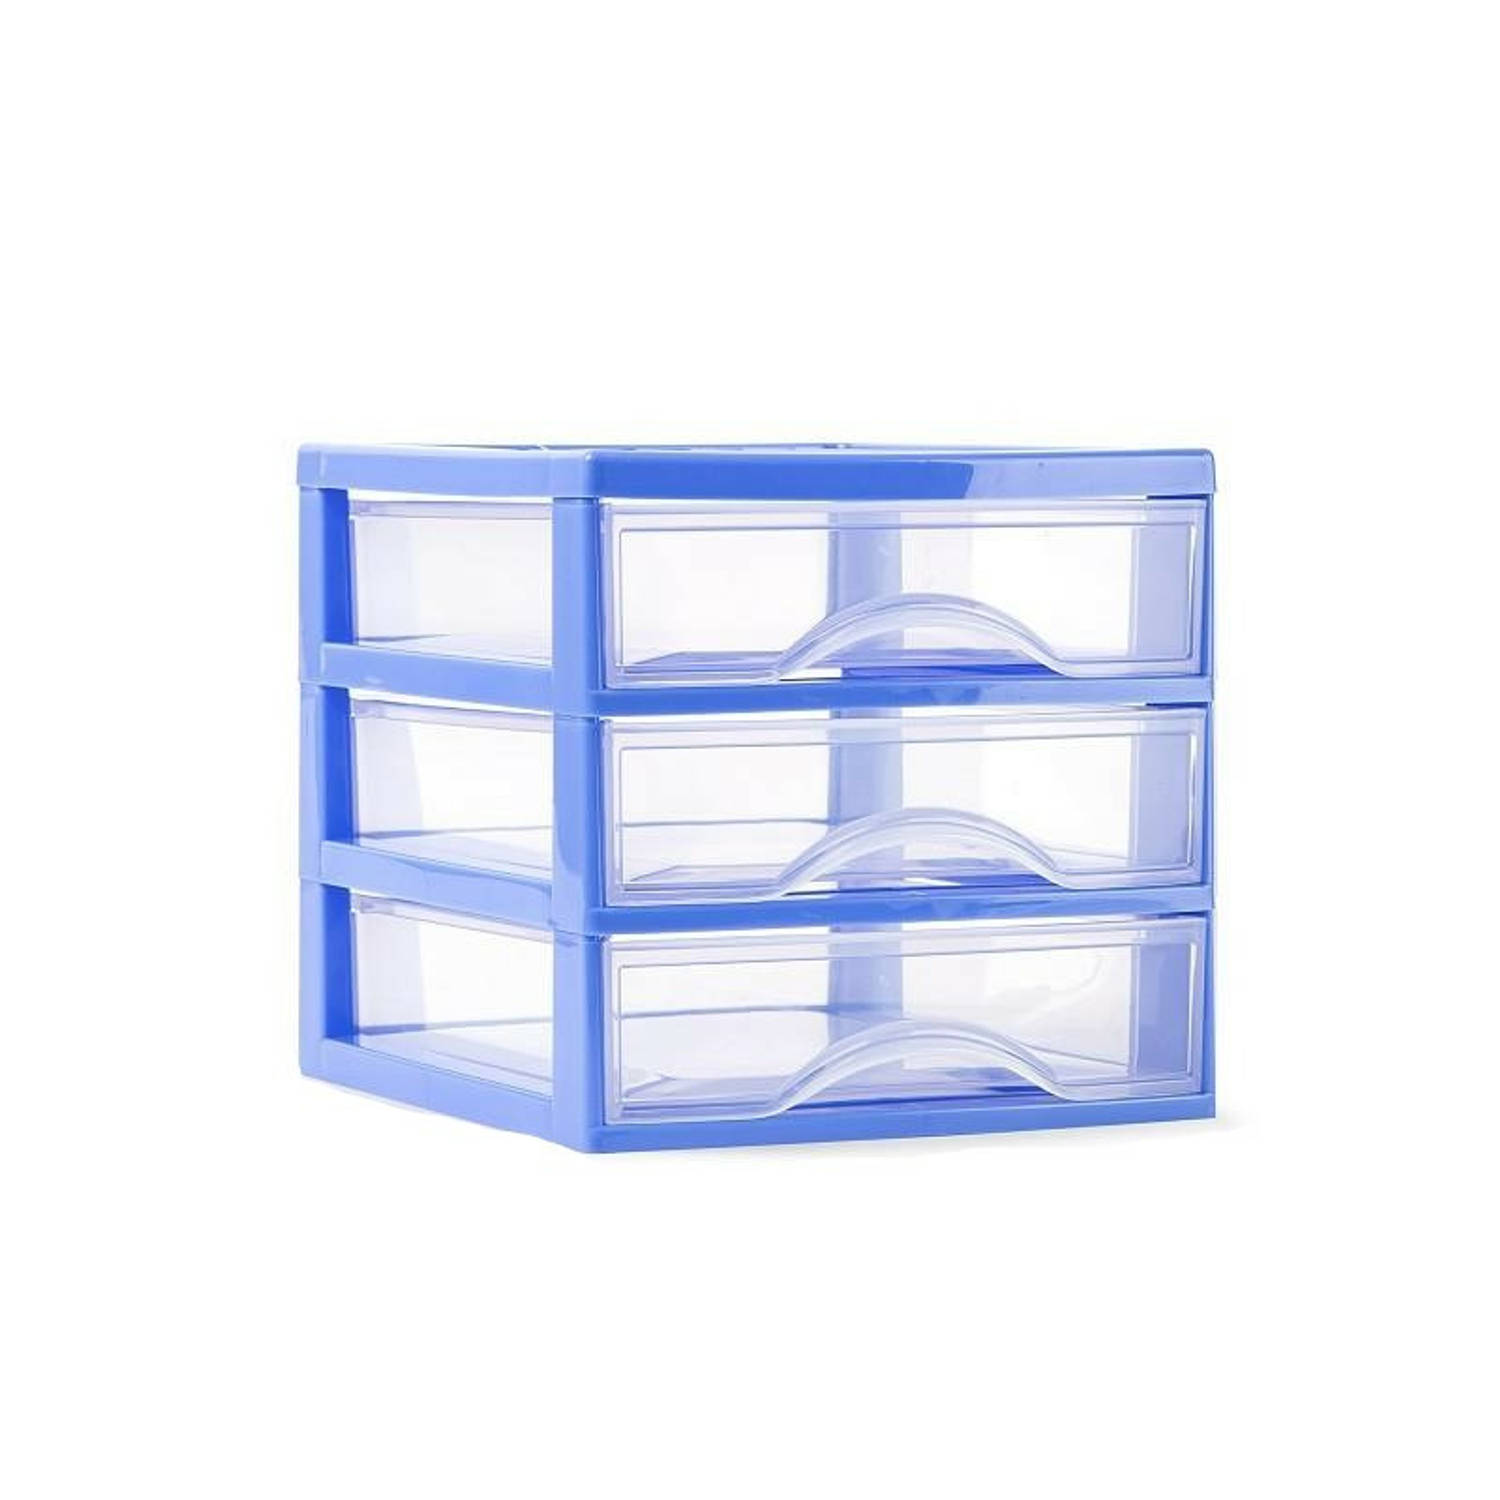 Plasticforte Ladeblokje/bureau organizer 3x lades - blauw/transparant - L18 x B21 x H17 cm - plastic